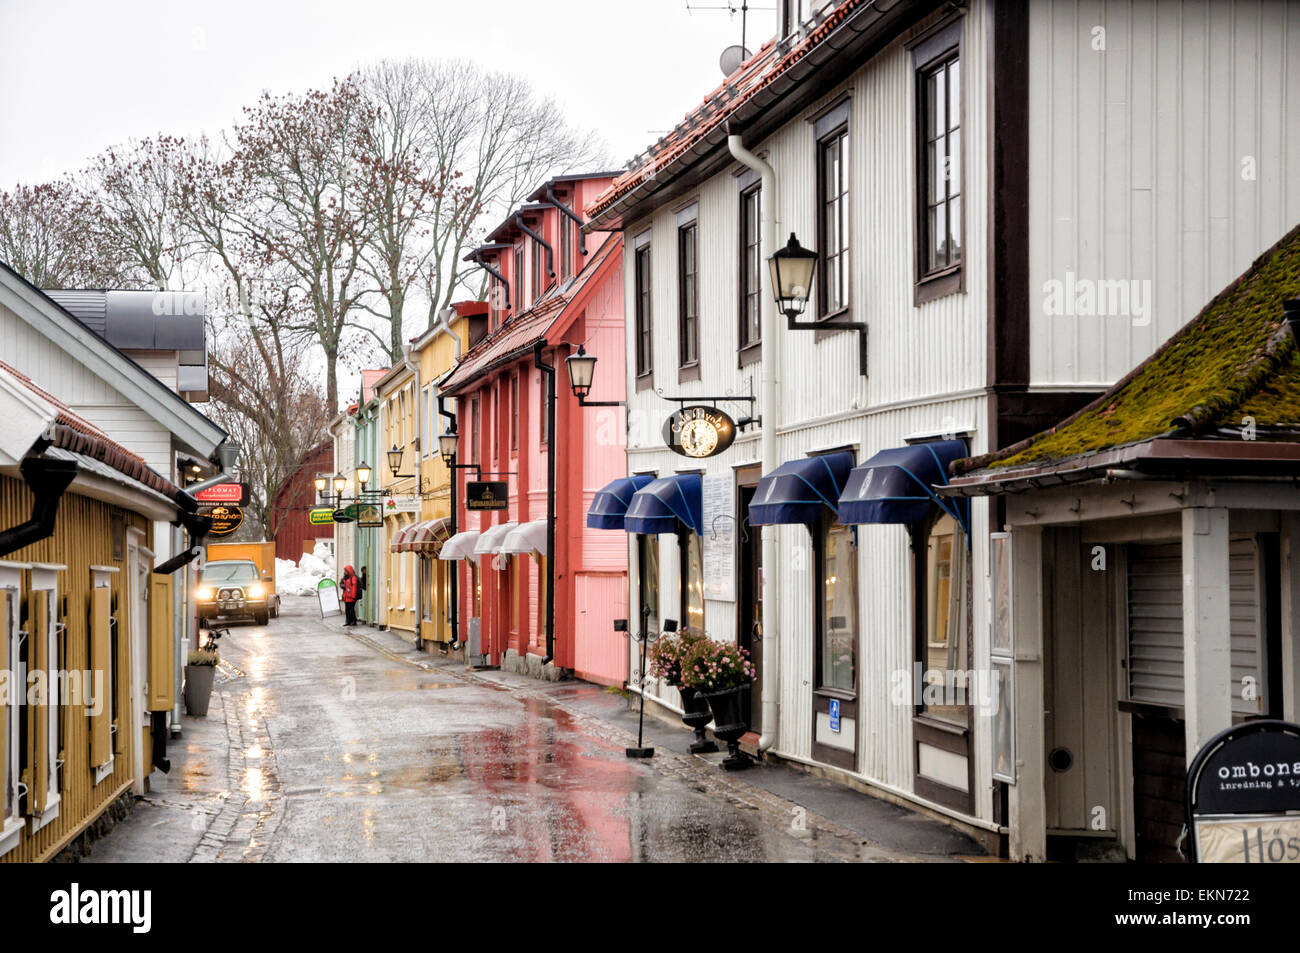 La calle principal de Sigtuna, una pequeña ciudad bonita cerca de Estocolmo, Suecia. Pintorescas casas de madera; tiendas suecas; típicas casas nórdicos escandinavos; Foto de stock